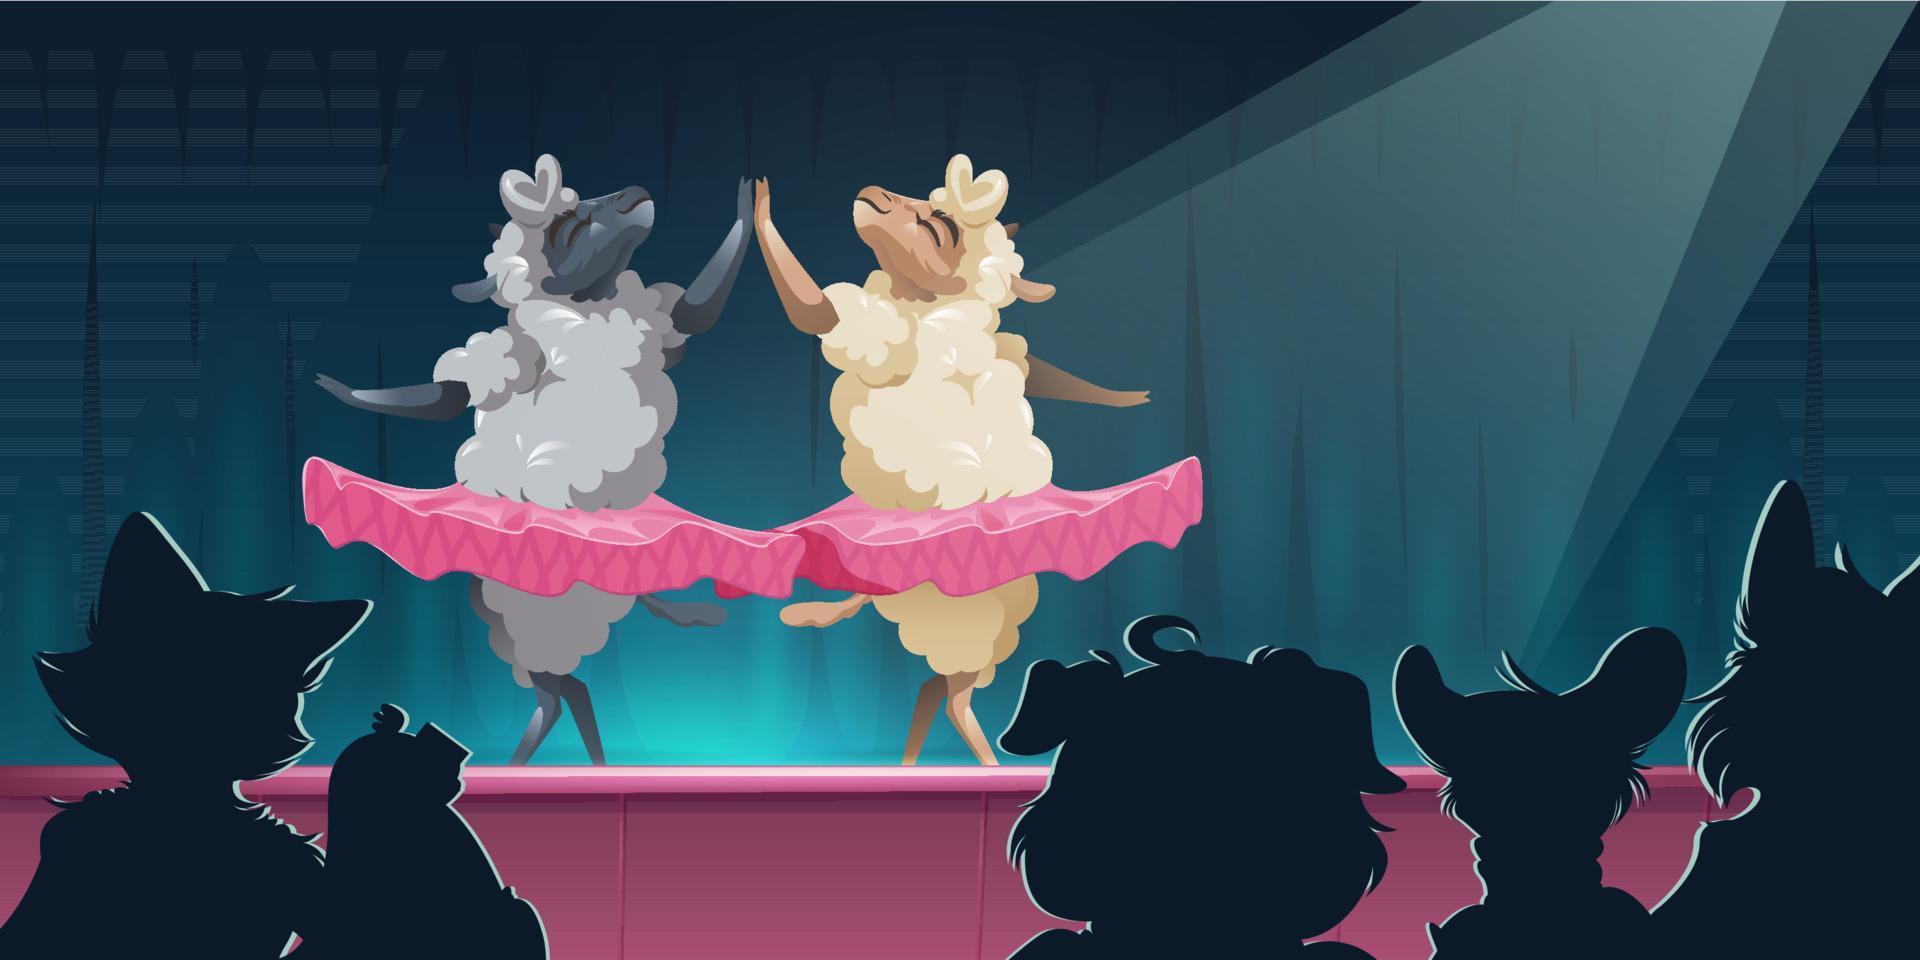 théâtre animalier avec moutons en tutu danse ballet vecteur